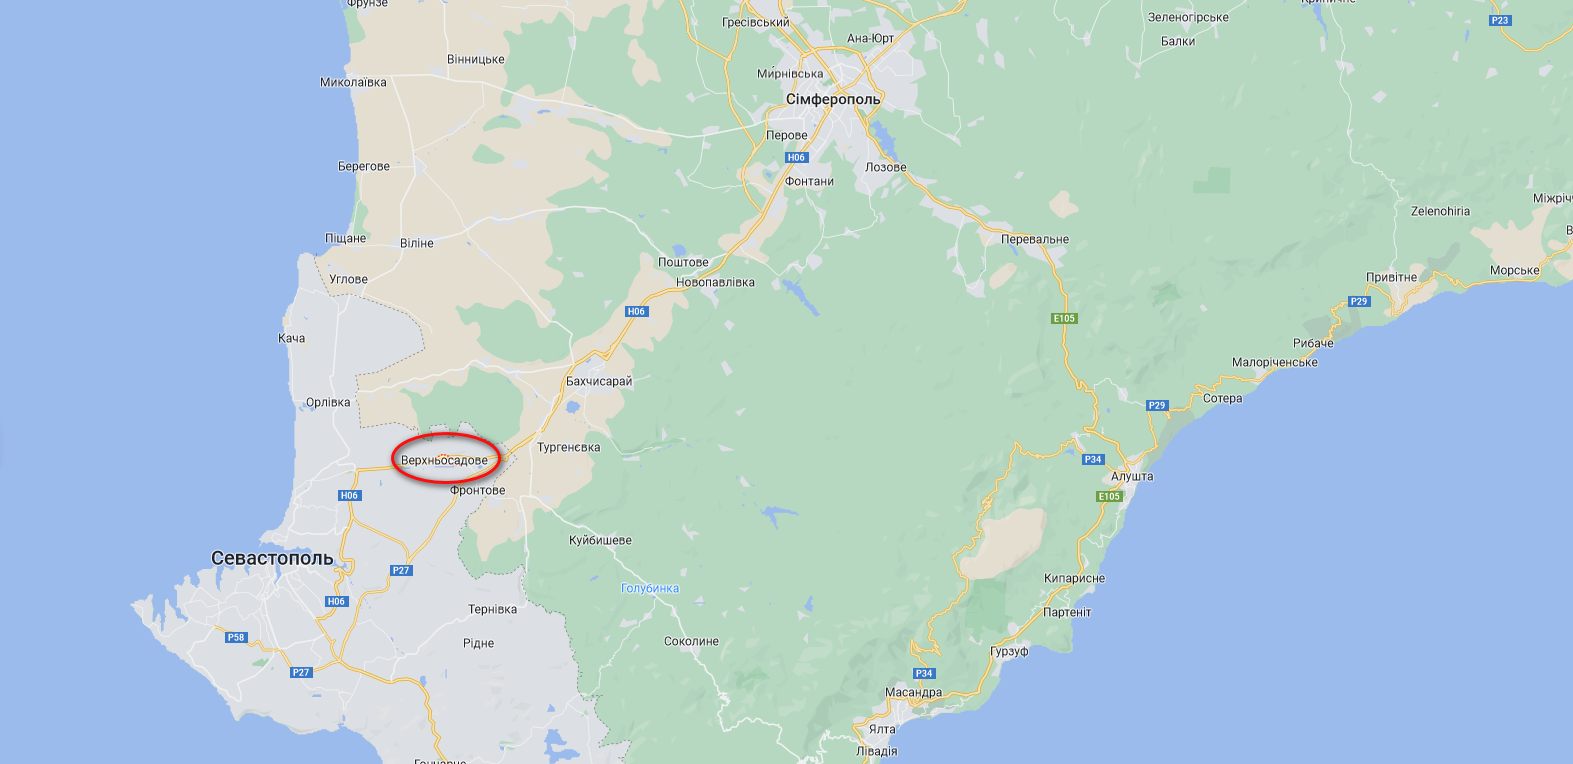 Верхньосадове (Дуванкой) на карті Криму (Фото – скриншот з Google Maps)